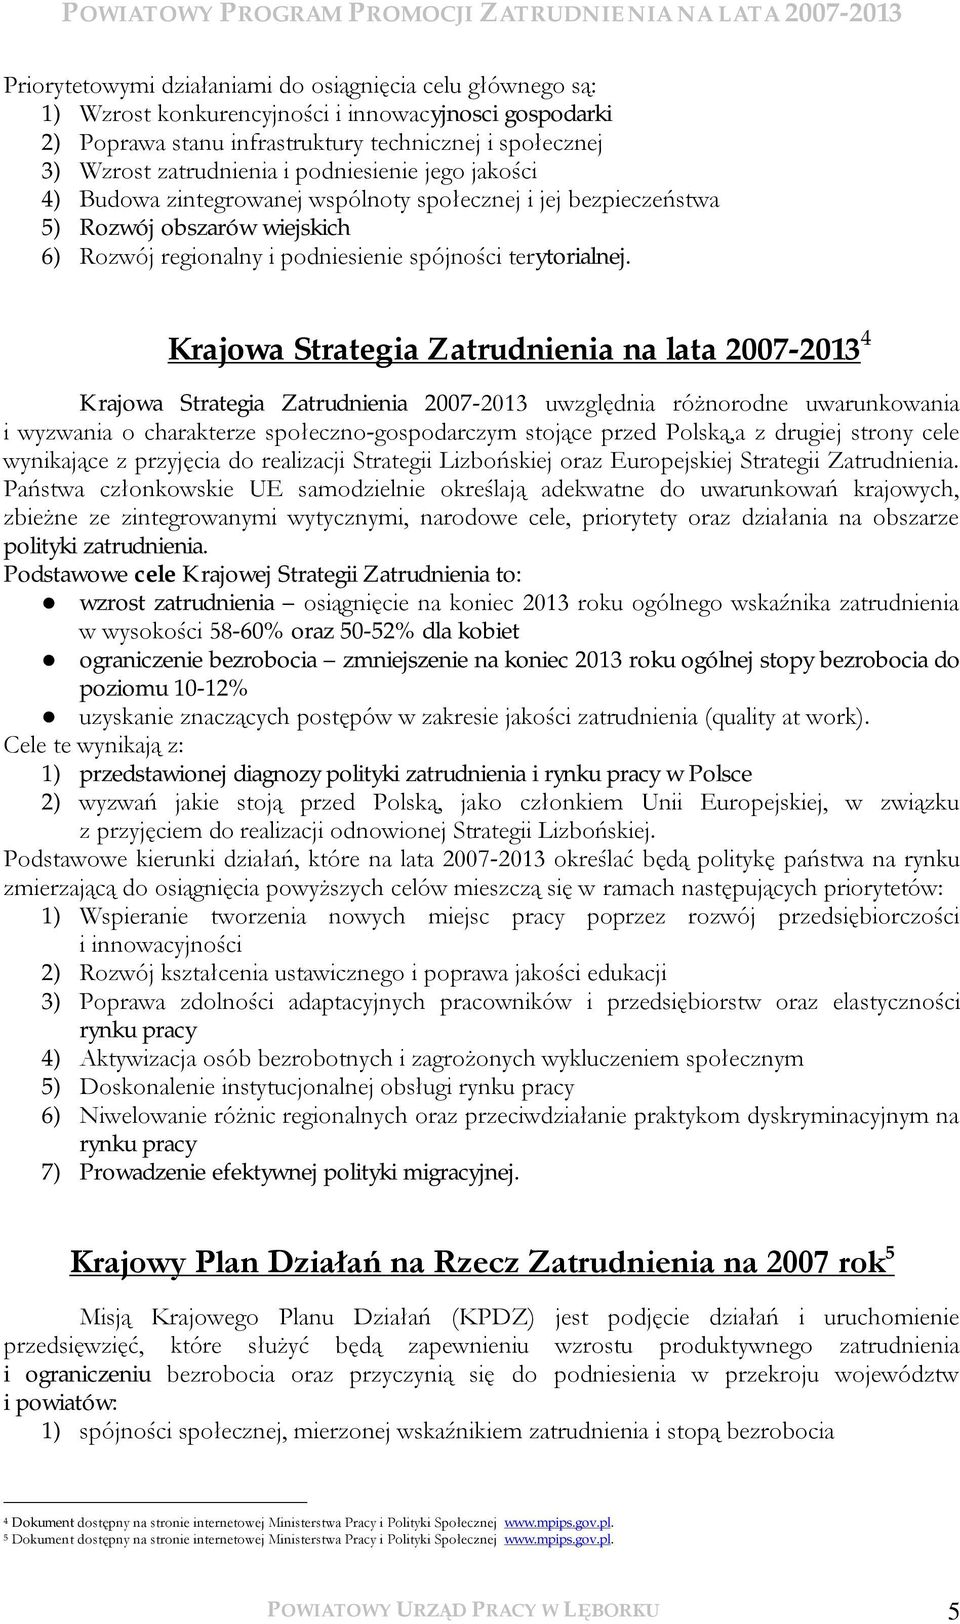 Krajowa Strategia Zatrudnienia na lata 2007-2013 4 Krajowa Strategia Zatrudnienia 2007-2013 uwzględnia różnorodne uwarunkowania i wyzwania o charakterze społeczno-gospodarczym stojące przed Polską,a